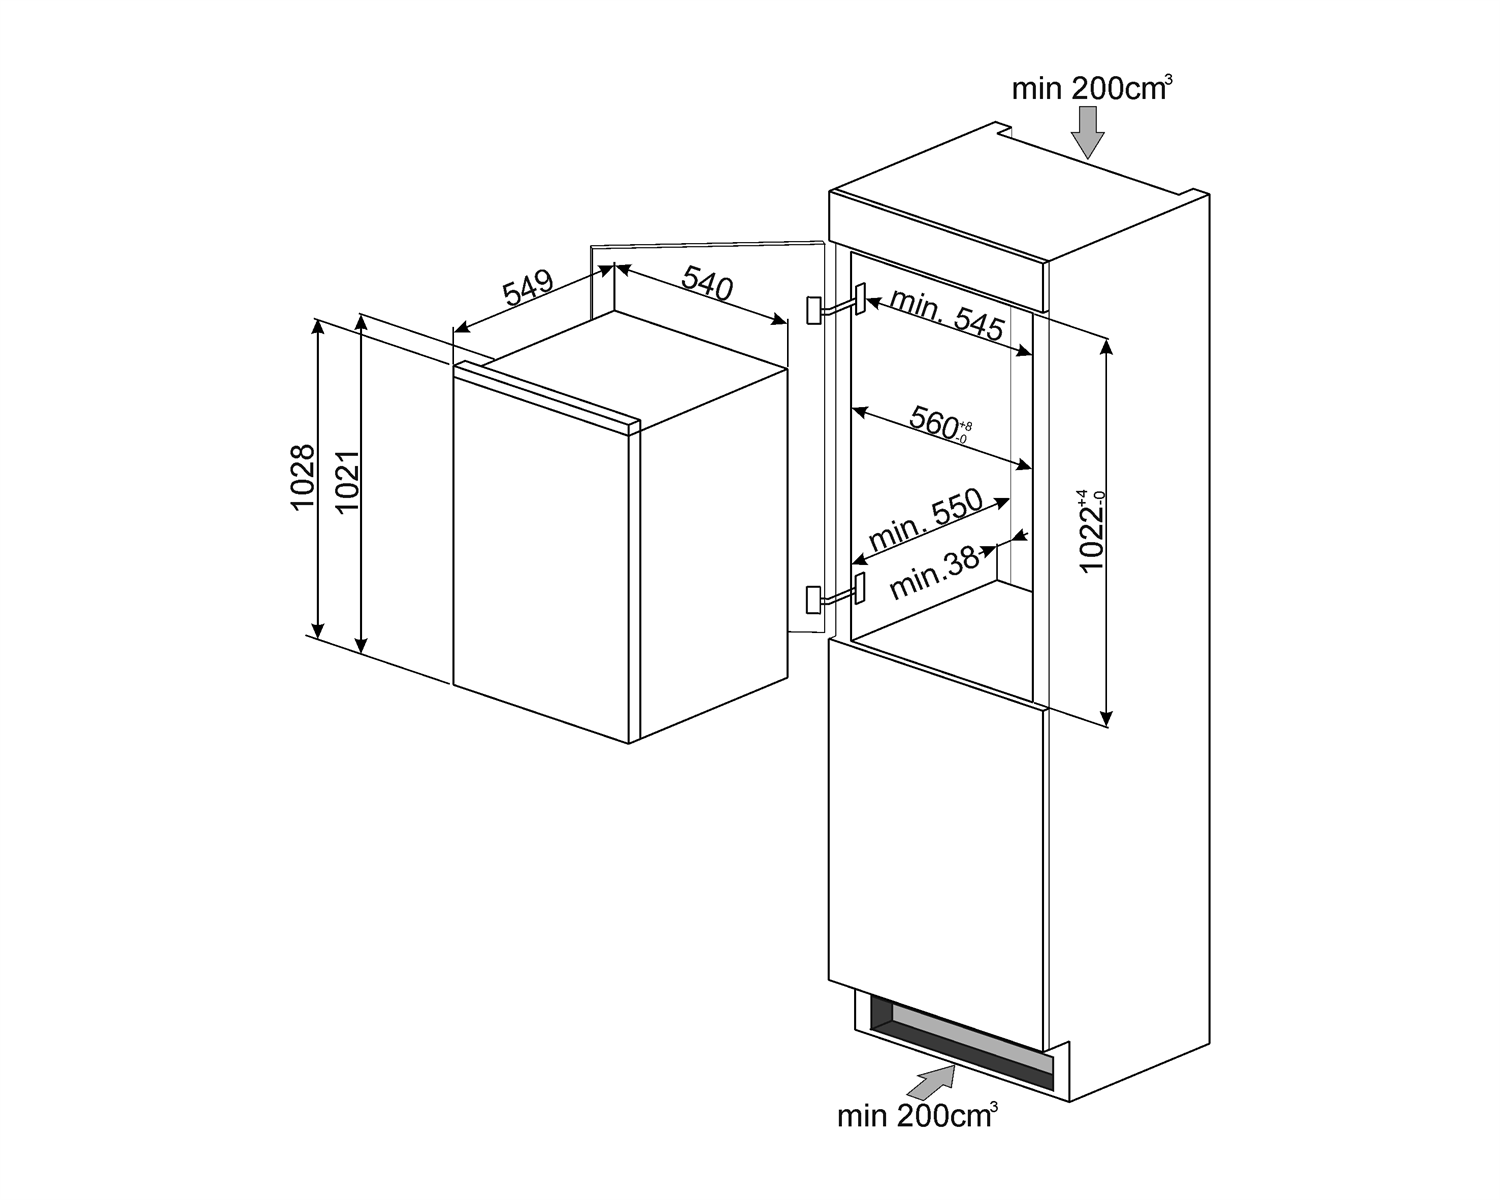 Maattekening SMEG koelkast inbouw S3C100P1